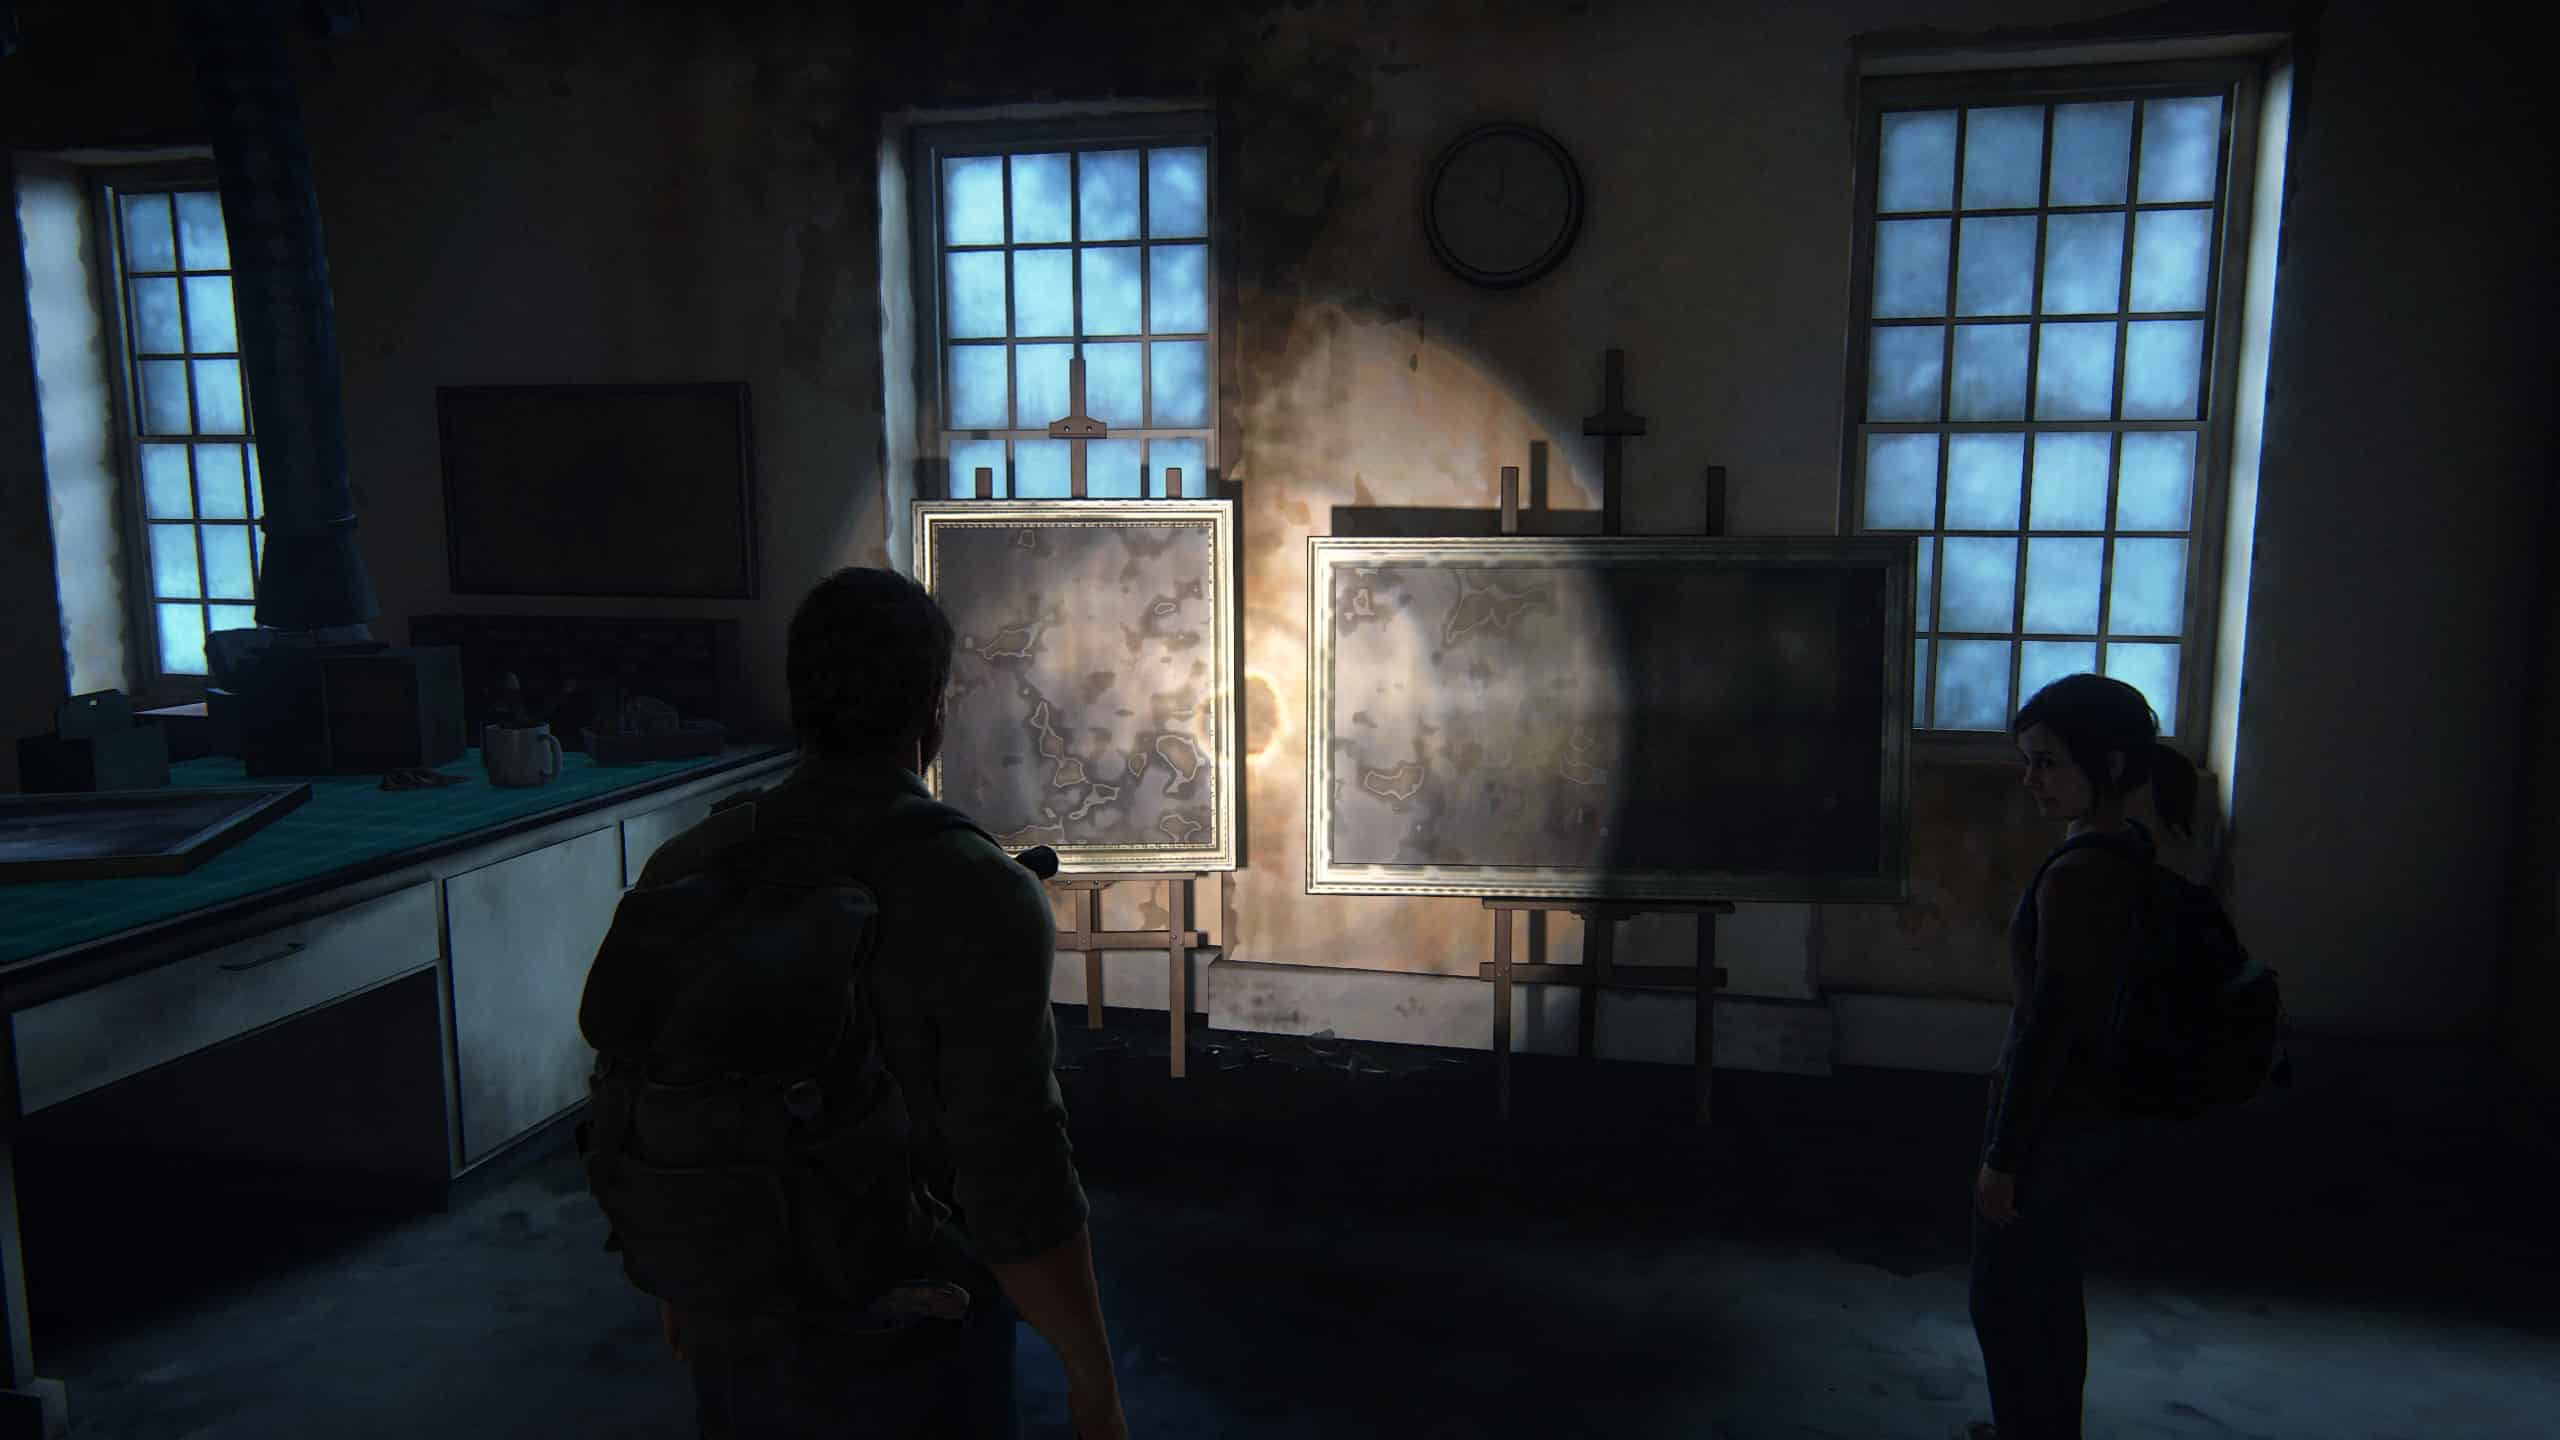 Sete teorias sobre The Last of Us Part 3 - o que pode acontecer